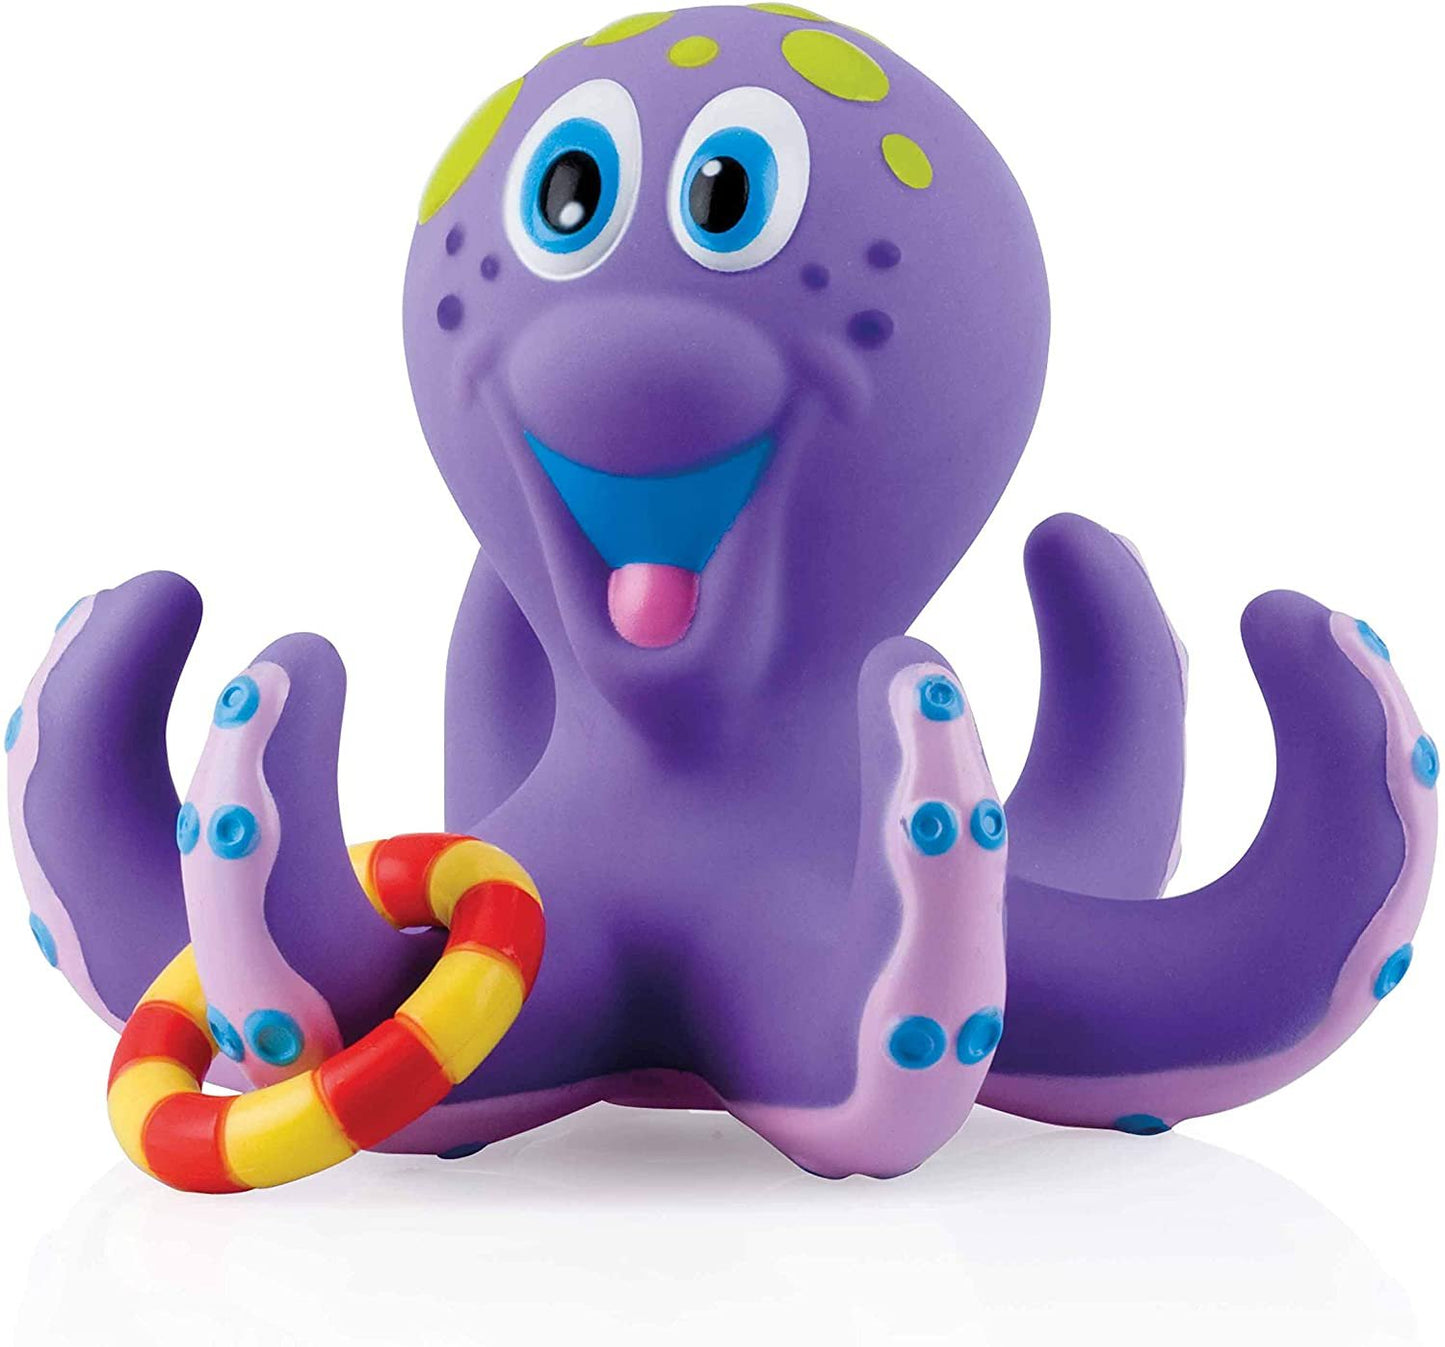 Nuby Octopus Floating Bath Toy